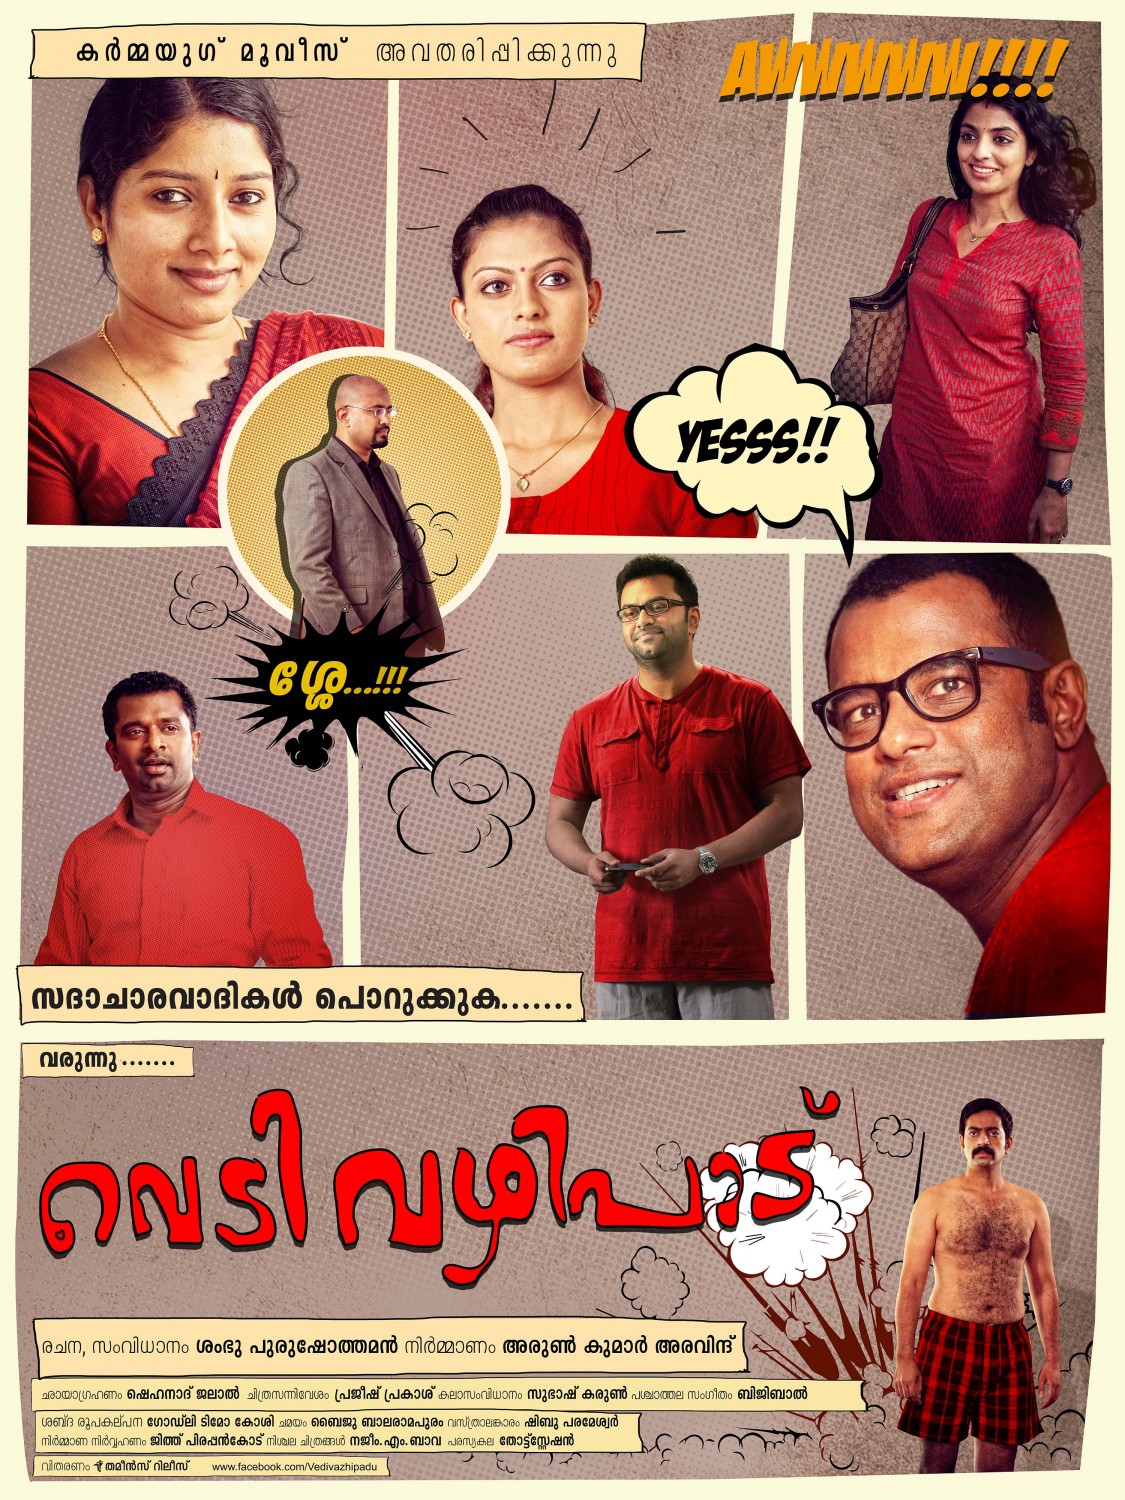 Extra Large Movie Poster Image for Vedivazhipadu (#11 of 13)